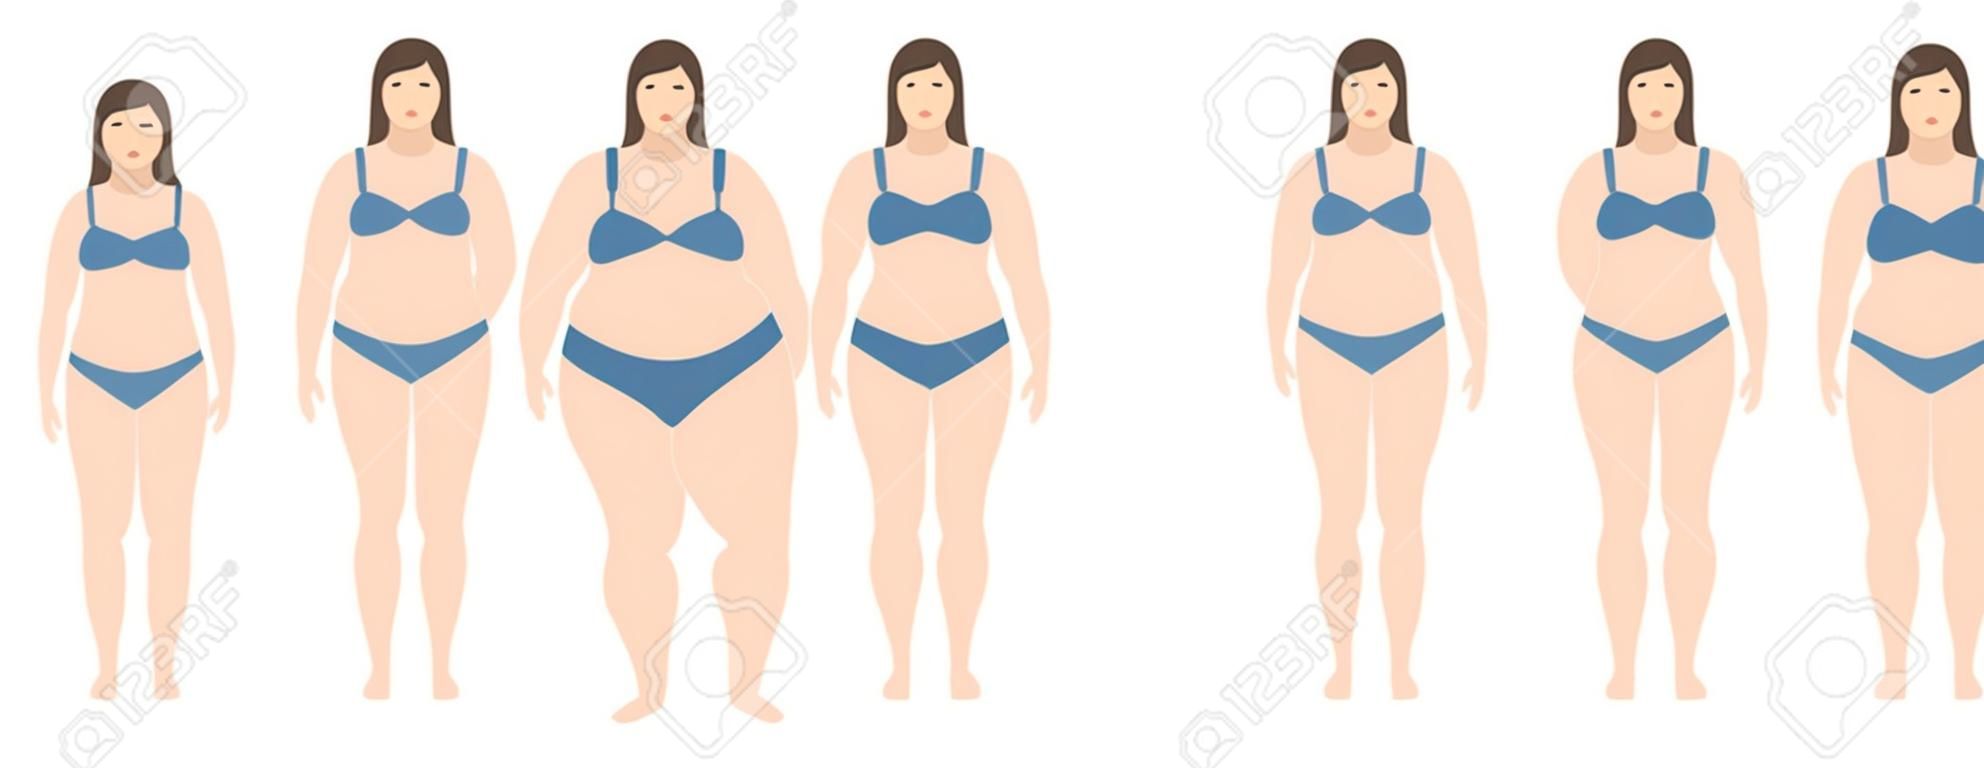 从厌食到极度肥胖体重指数减重概念的矢量图解